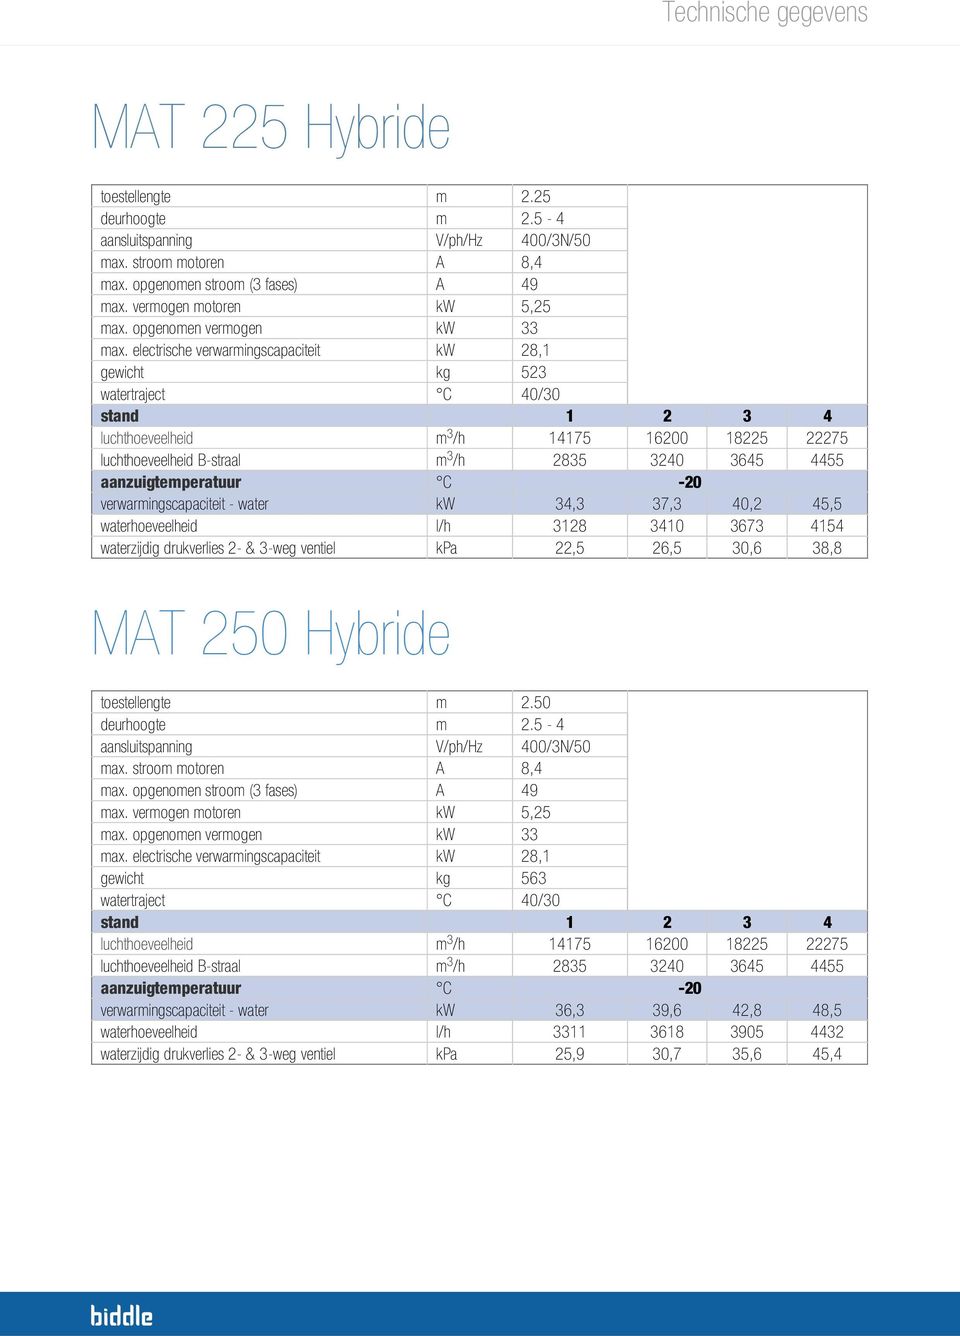 verwarmingscapaciteit - water kw 34,3 37,3 40,2 45,5 waterhoeveelheid l/h 3128 3410 3673 4154 waterzijdig drukverlies 2- & 3-weg ventiel kpa 22,5 26,5 30,6 38,8 MAT 250 Hybride toestellengte m 2.